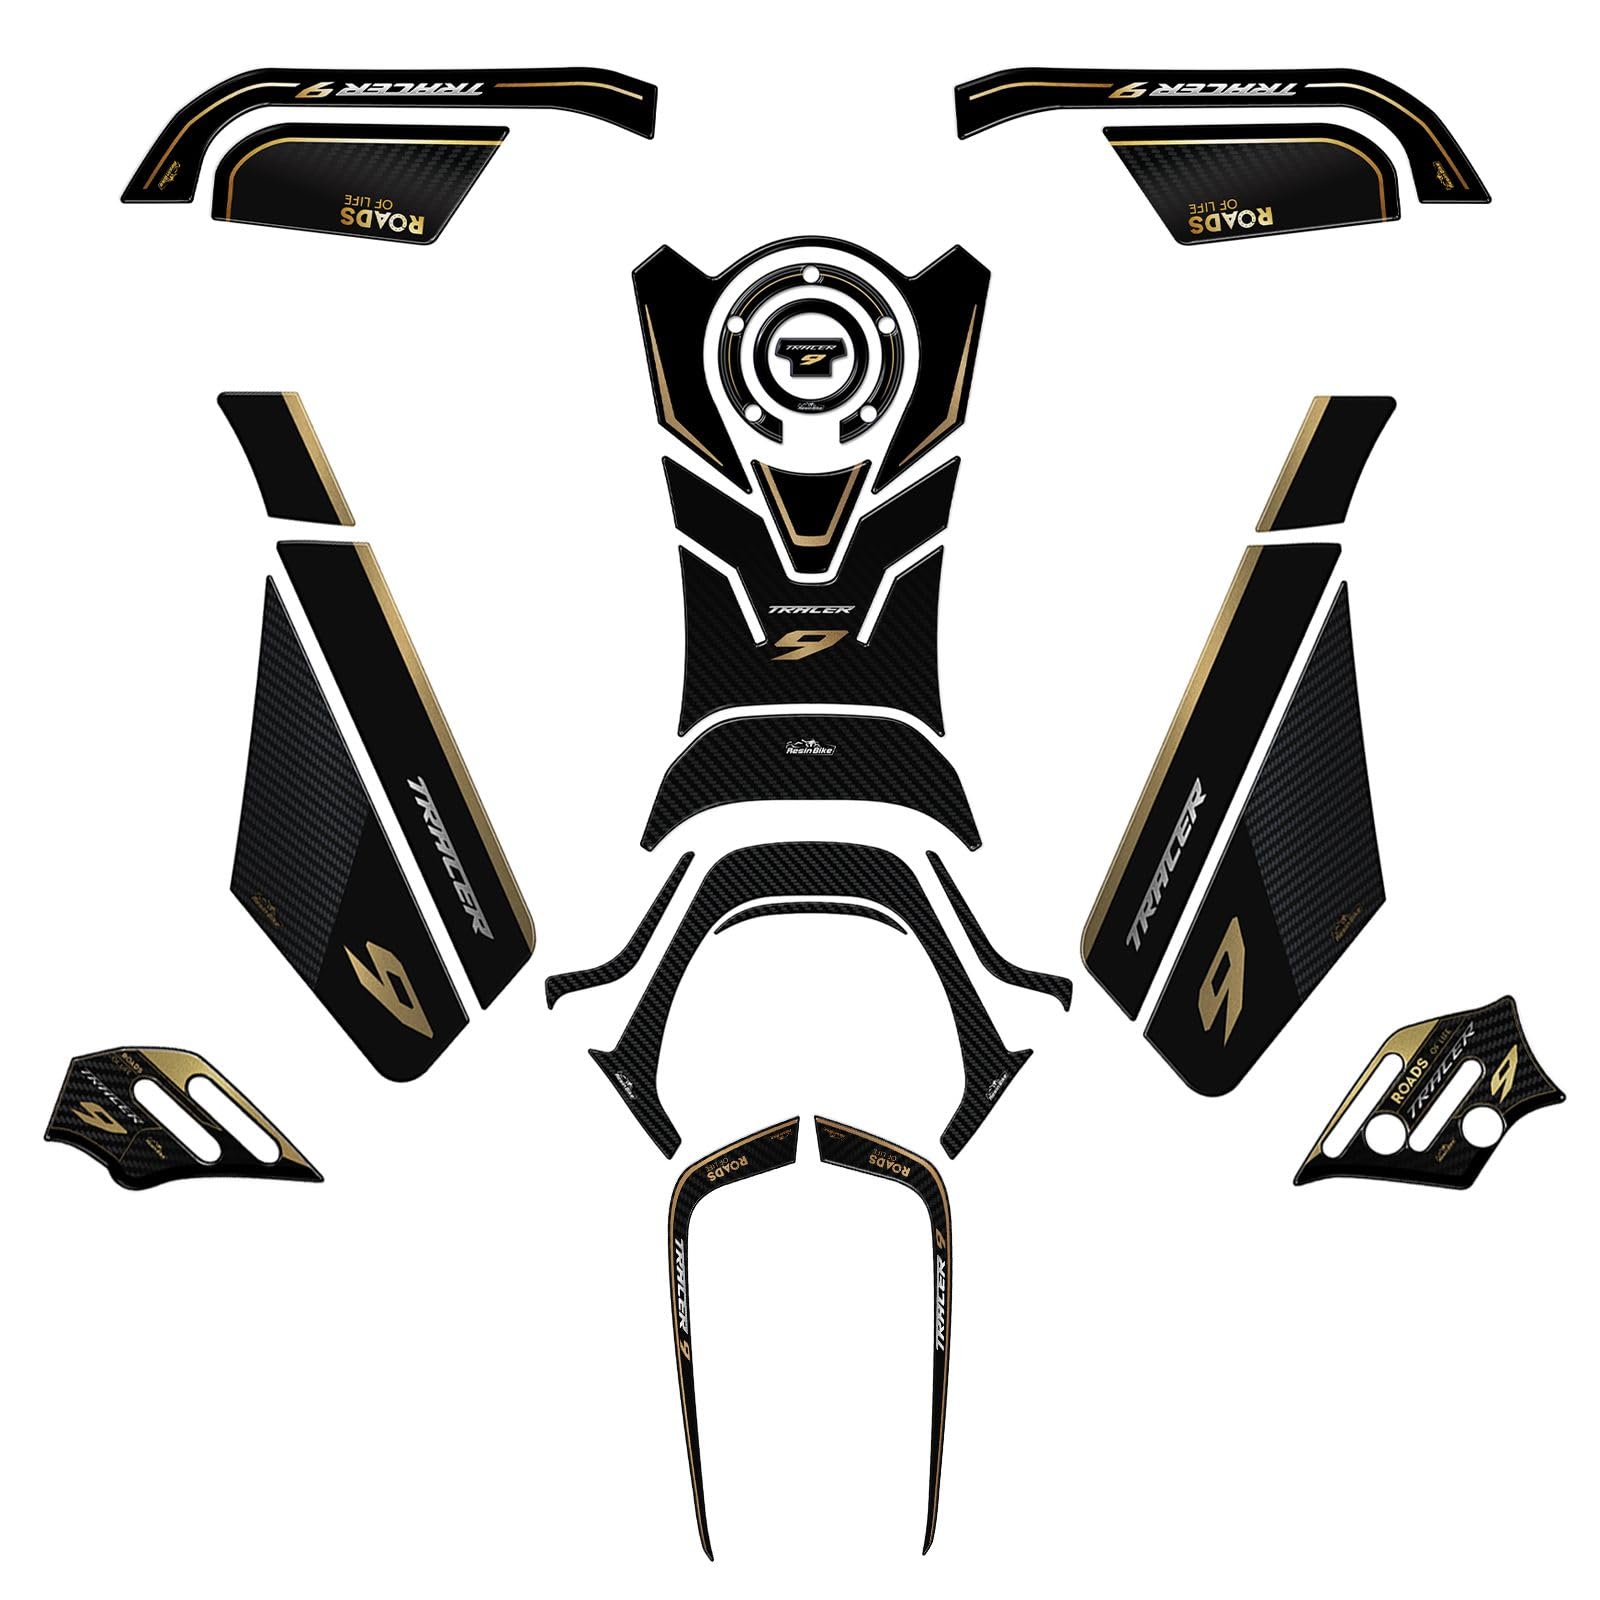 Resin Bike Kit Aufkleber Motorrad Kompatibel Mit Yamaha Tracer 9-9 GT 2021 2023 Gold. Schutz Motorrad Tank-Schutzfolie vor Stößen und Kratzern. Kit Aufklebersatz 3D-Harzklebstoff - Stickers von Resin Bike